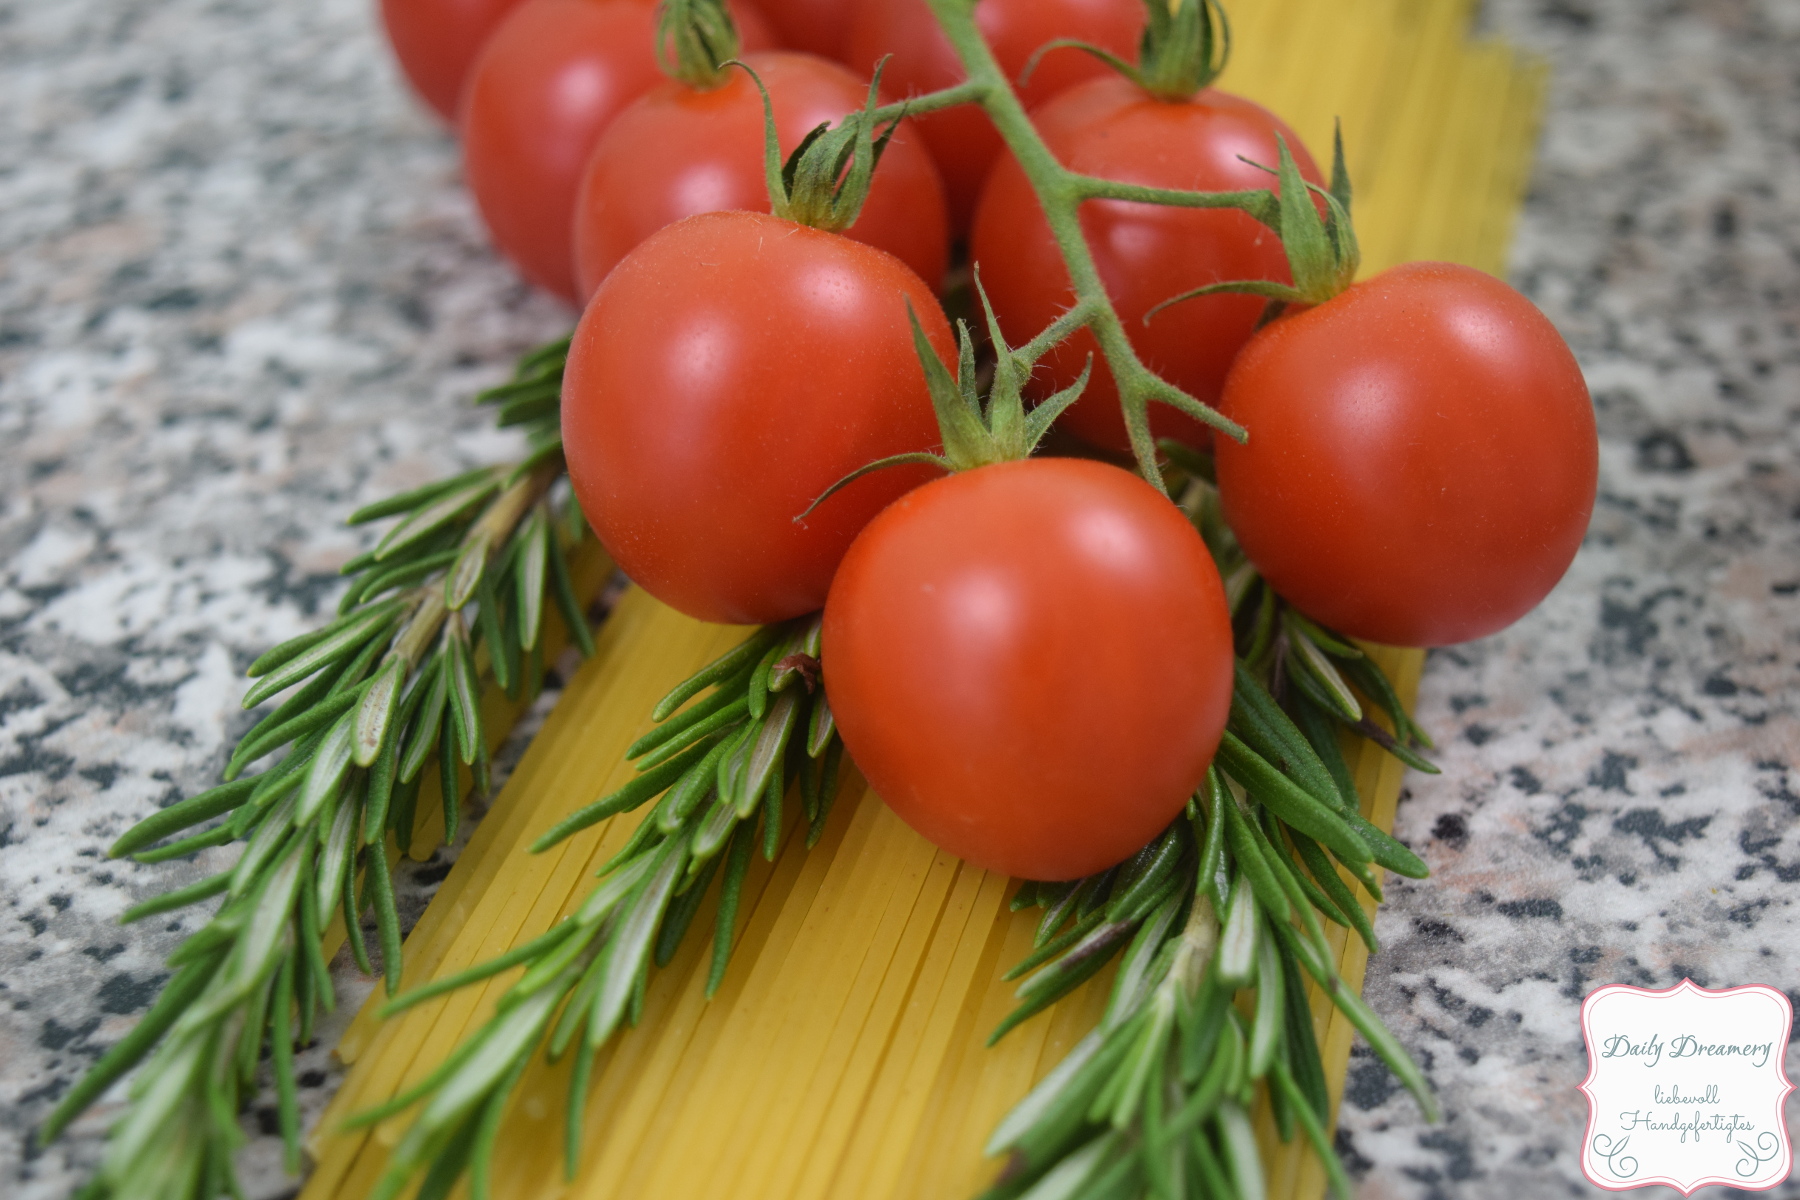 Zucchini-Spaghetti mit glasierten Tomaten und Kürbiskernen  |  A Little Fashion  |  https://www.filizity.com/food/zucchini-spaghetti-tomaten-kuerbiskerne